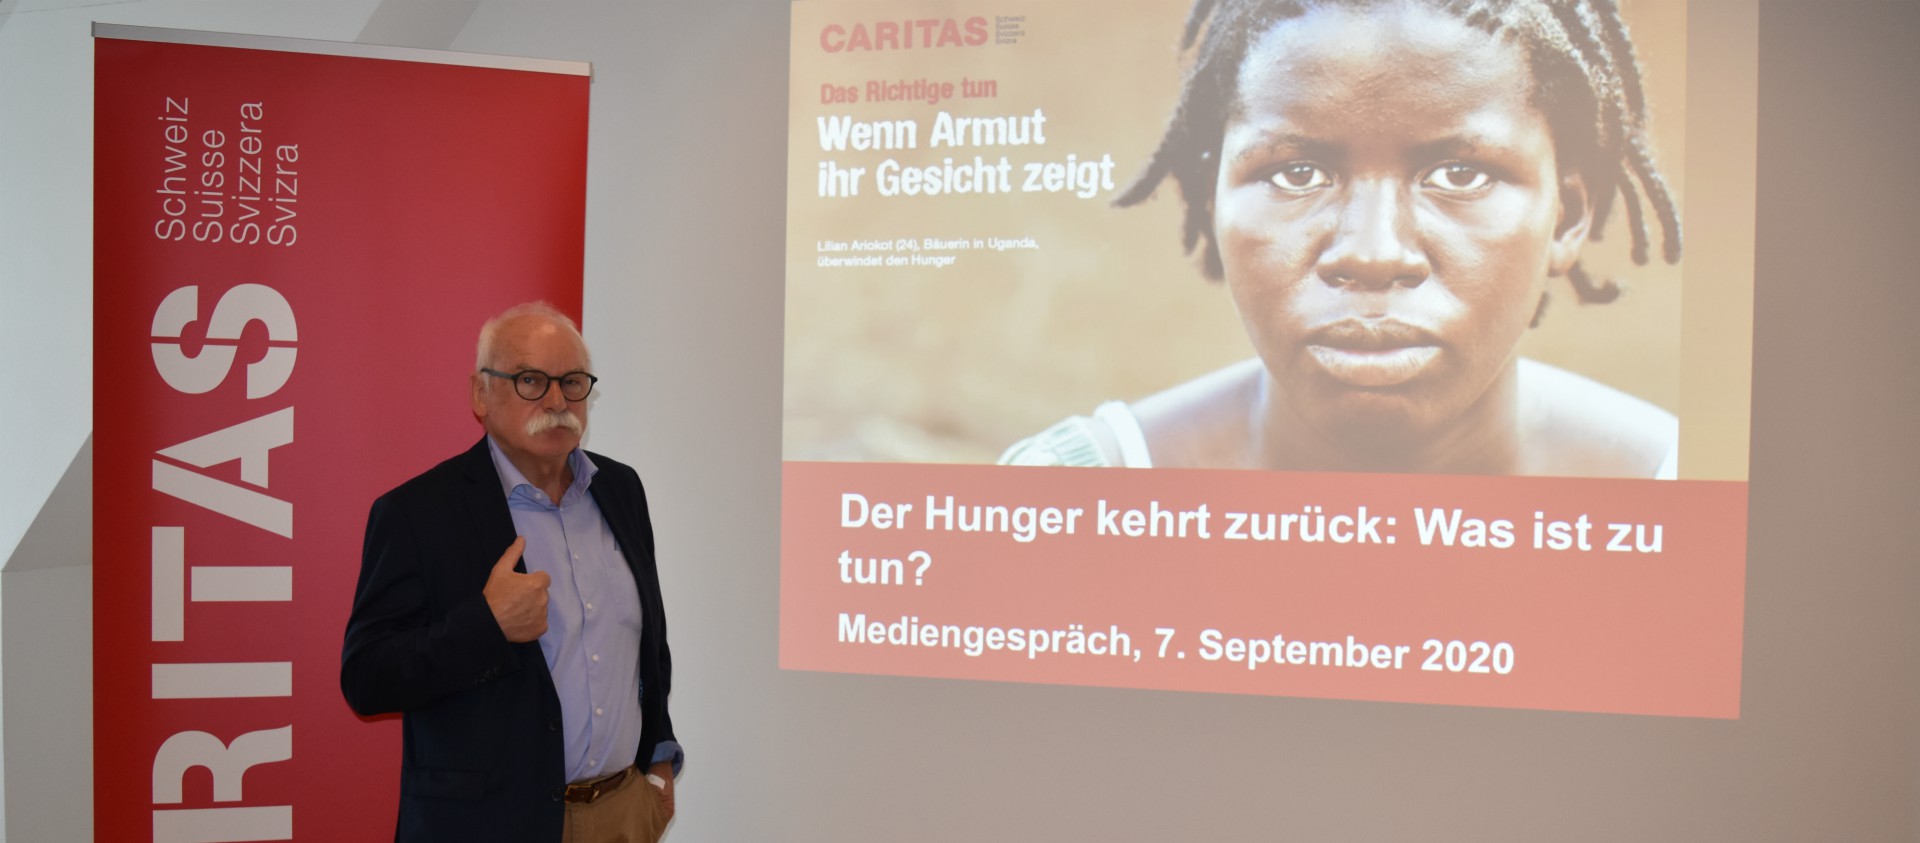 Au nom de Caritas Suisse, Hugo Fasel demande un milliard de francs supplémentaires de la Confédération pour venir en aide aux plus pauvres  | © Jacques Berset